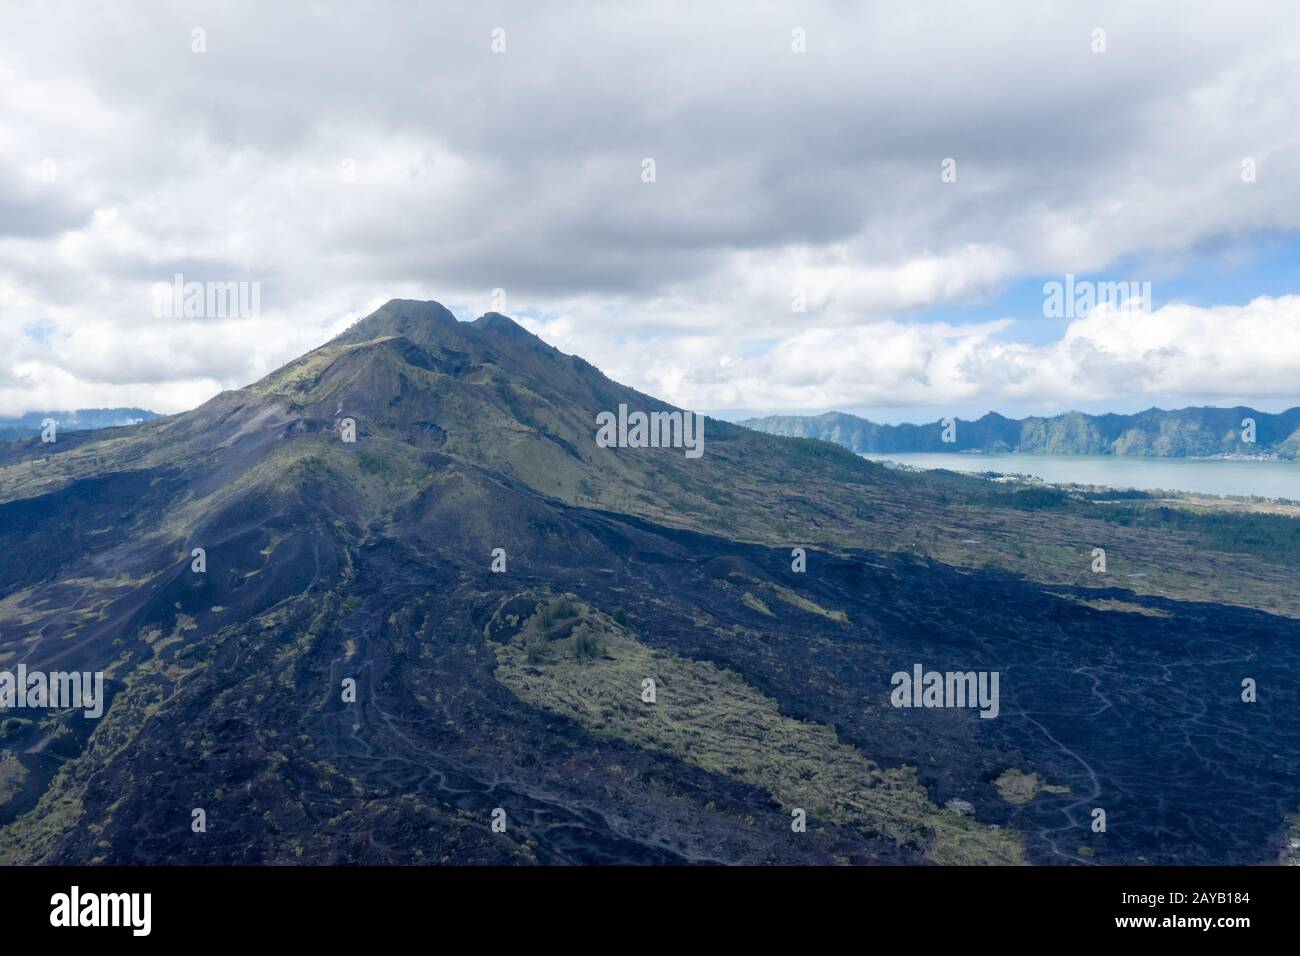 Mount Agung volcano closeup Stock Photo